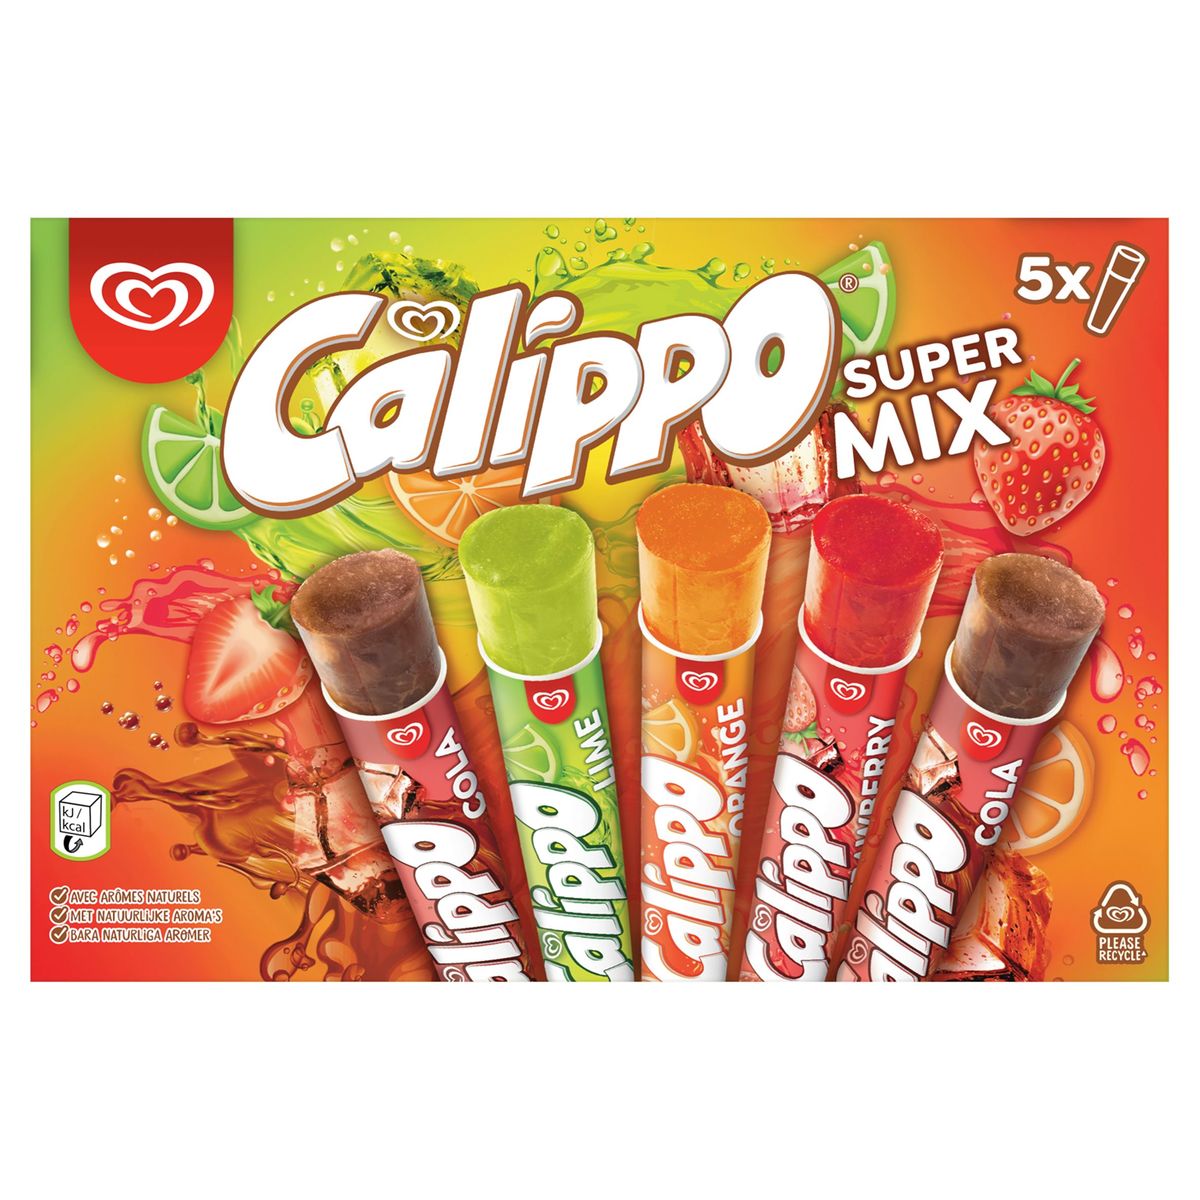 Calippo Ola Waterijs Calippo Supermix 5x105 ml